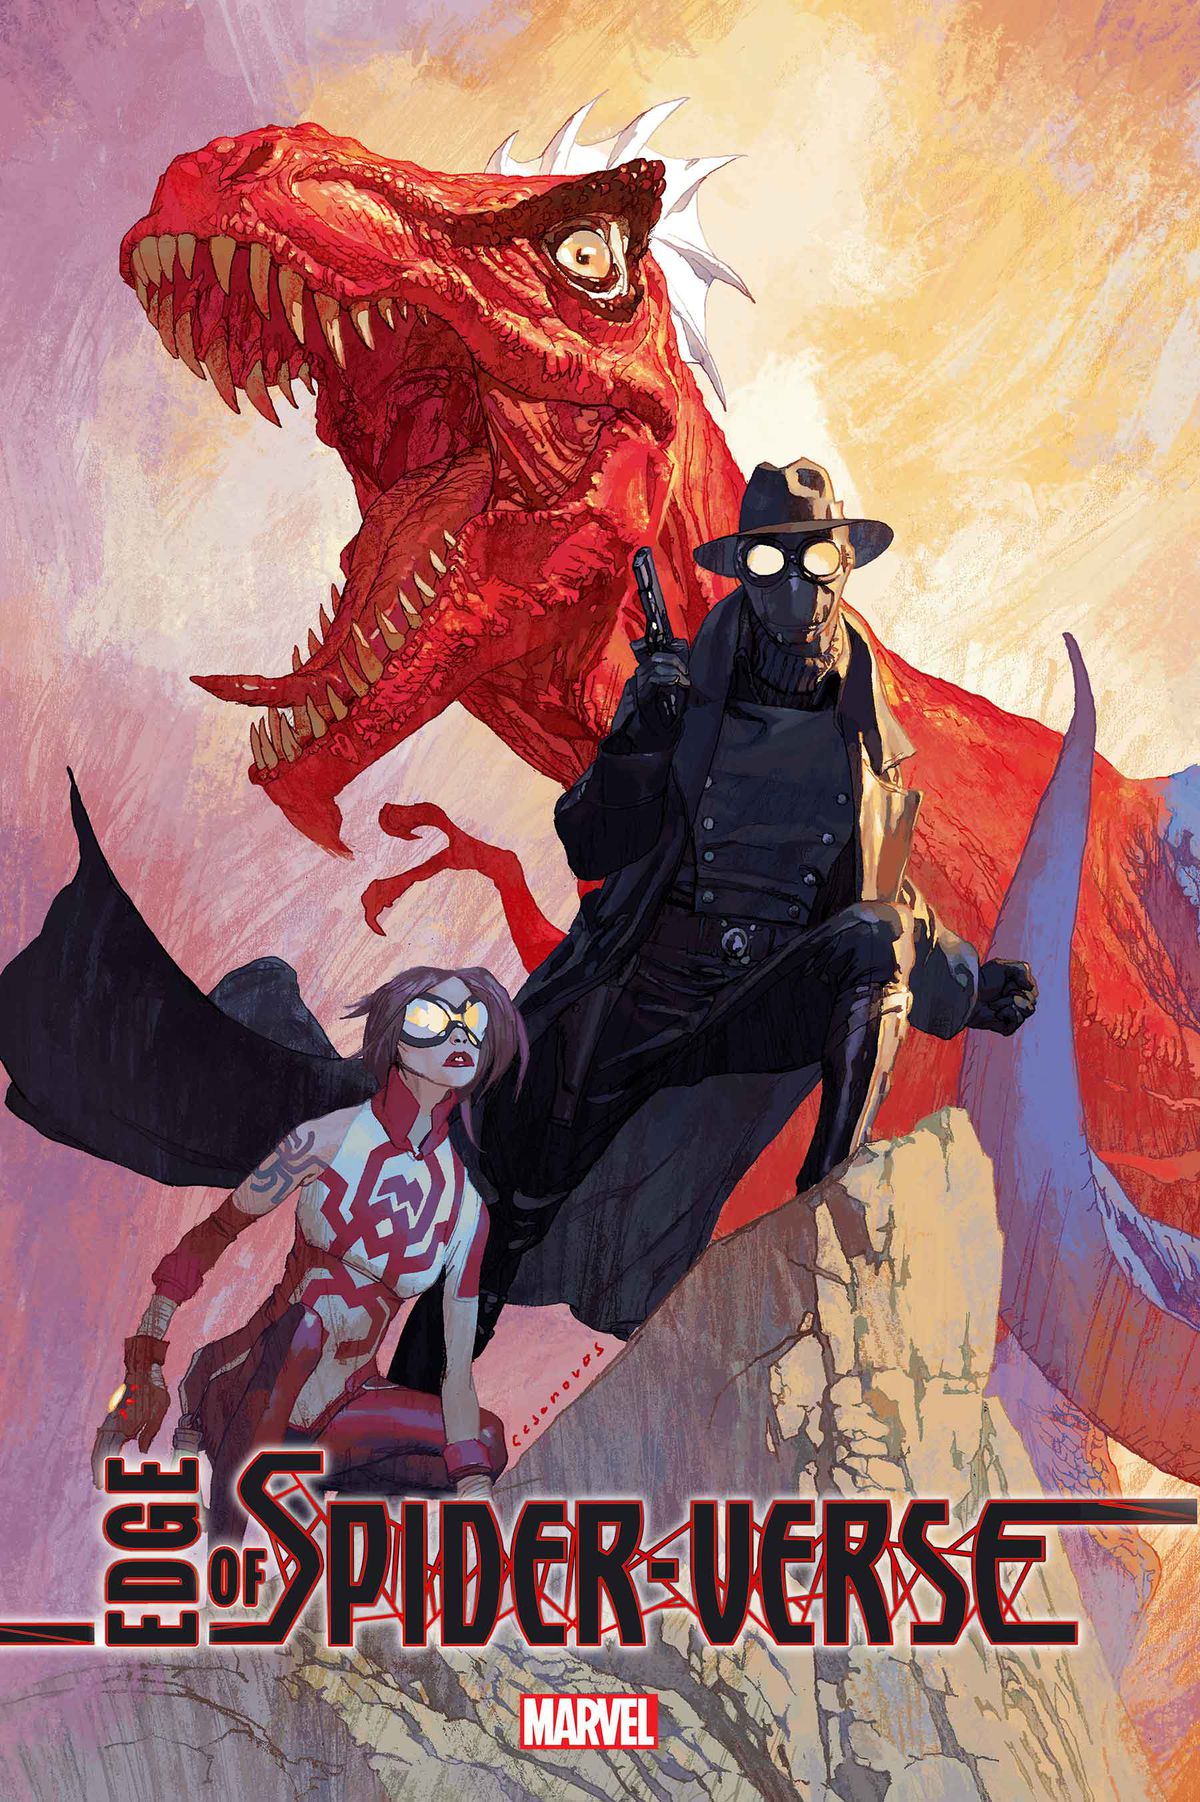 Araña, Spider-Man Noir ve Spider-Rex (Örümcek Adam renklerine sahip bir T. Rex), Edge of Spider-Verse #1 (2022) kapağında.